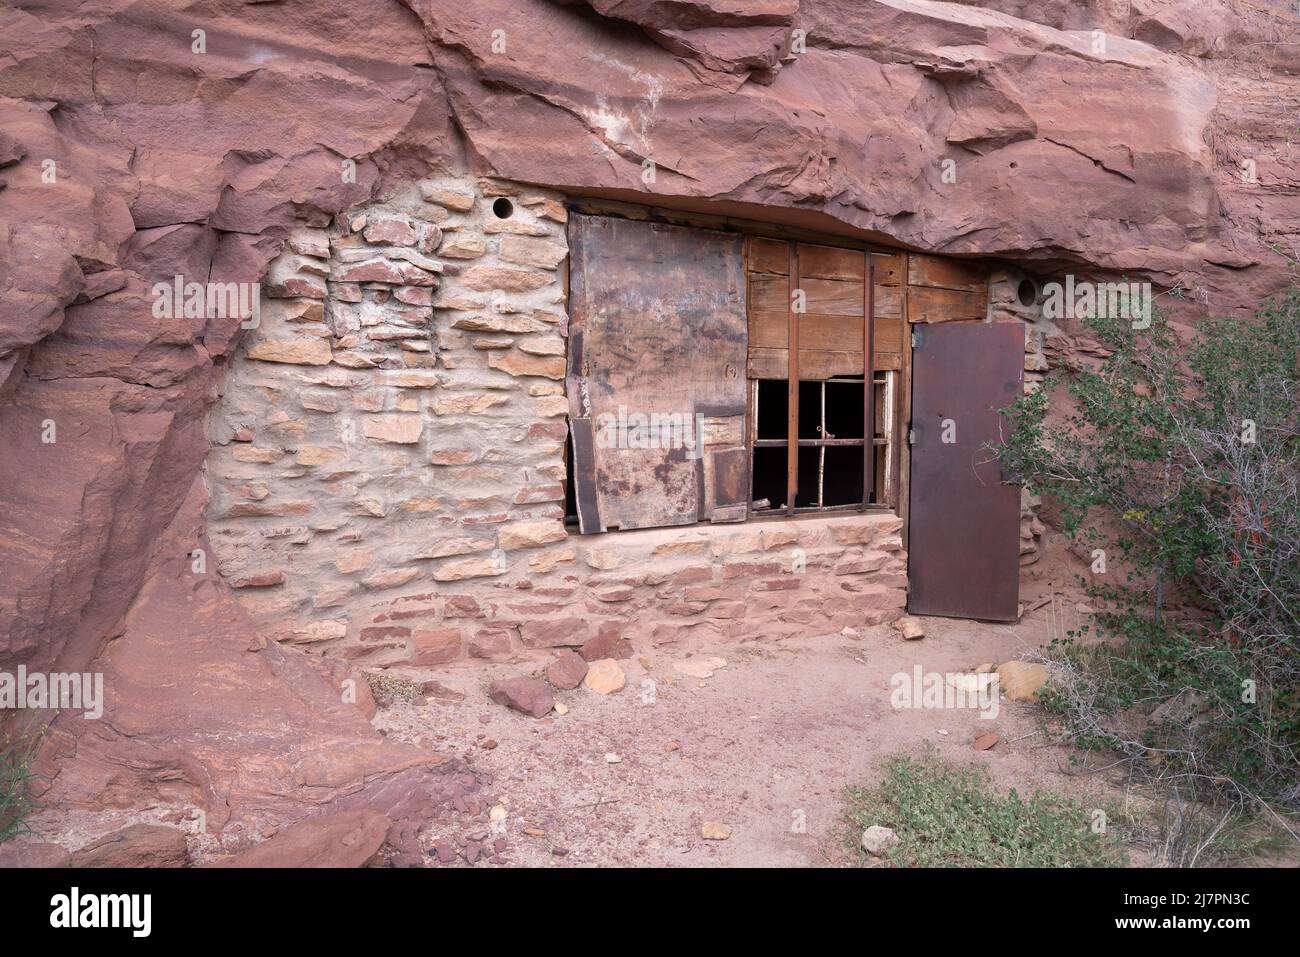 Salle des fouilles, Anderson Bottom, Parc national de Canyonlands, Utah. Banque D'Images